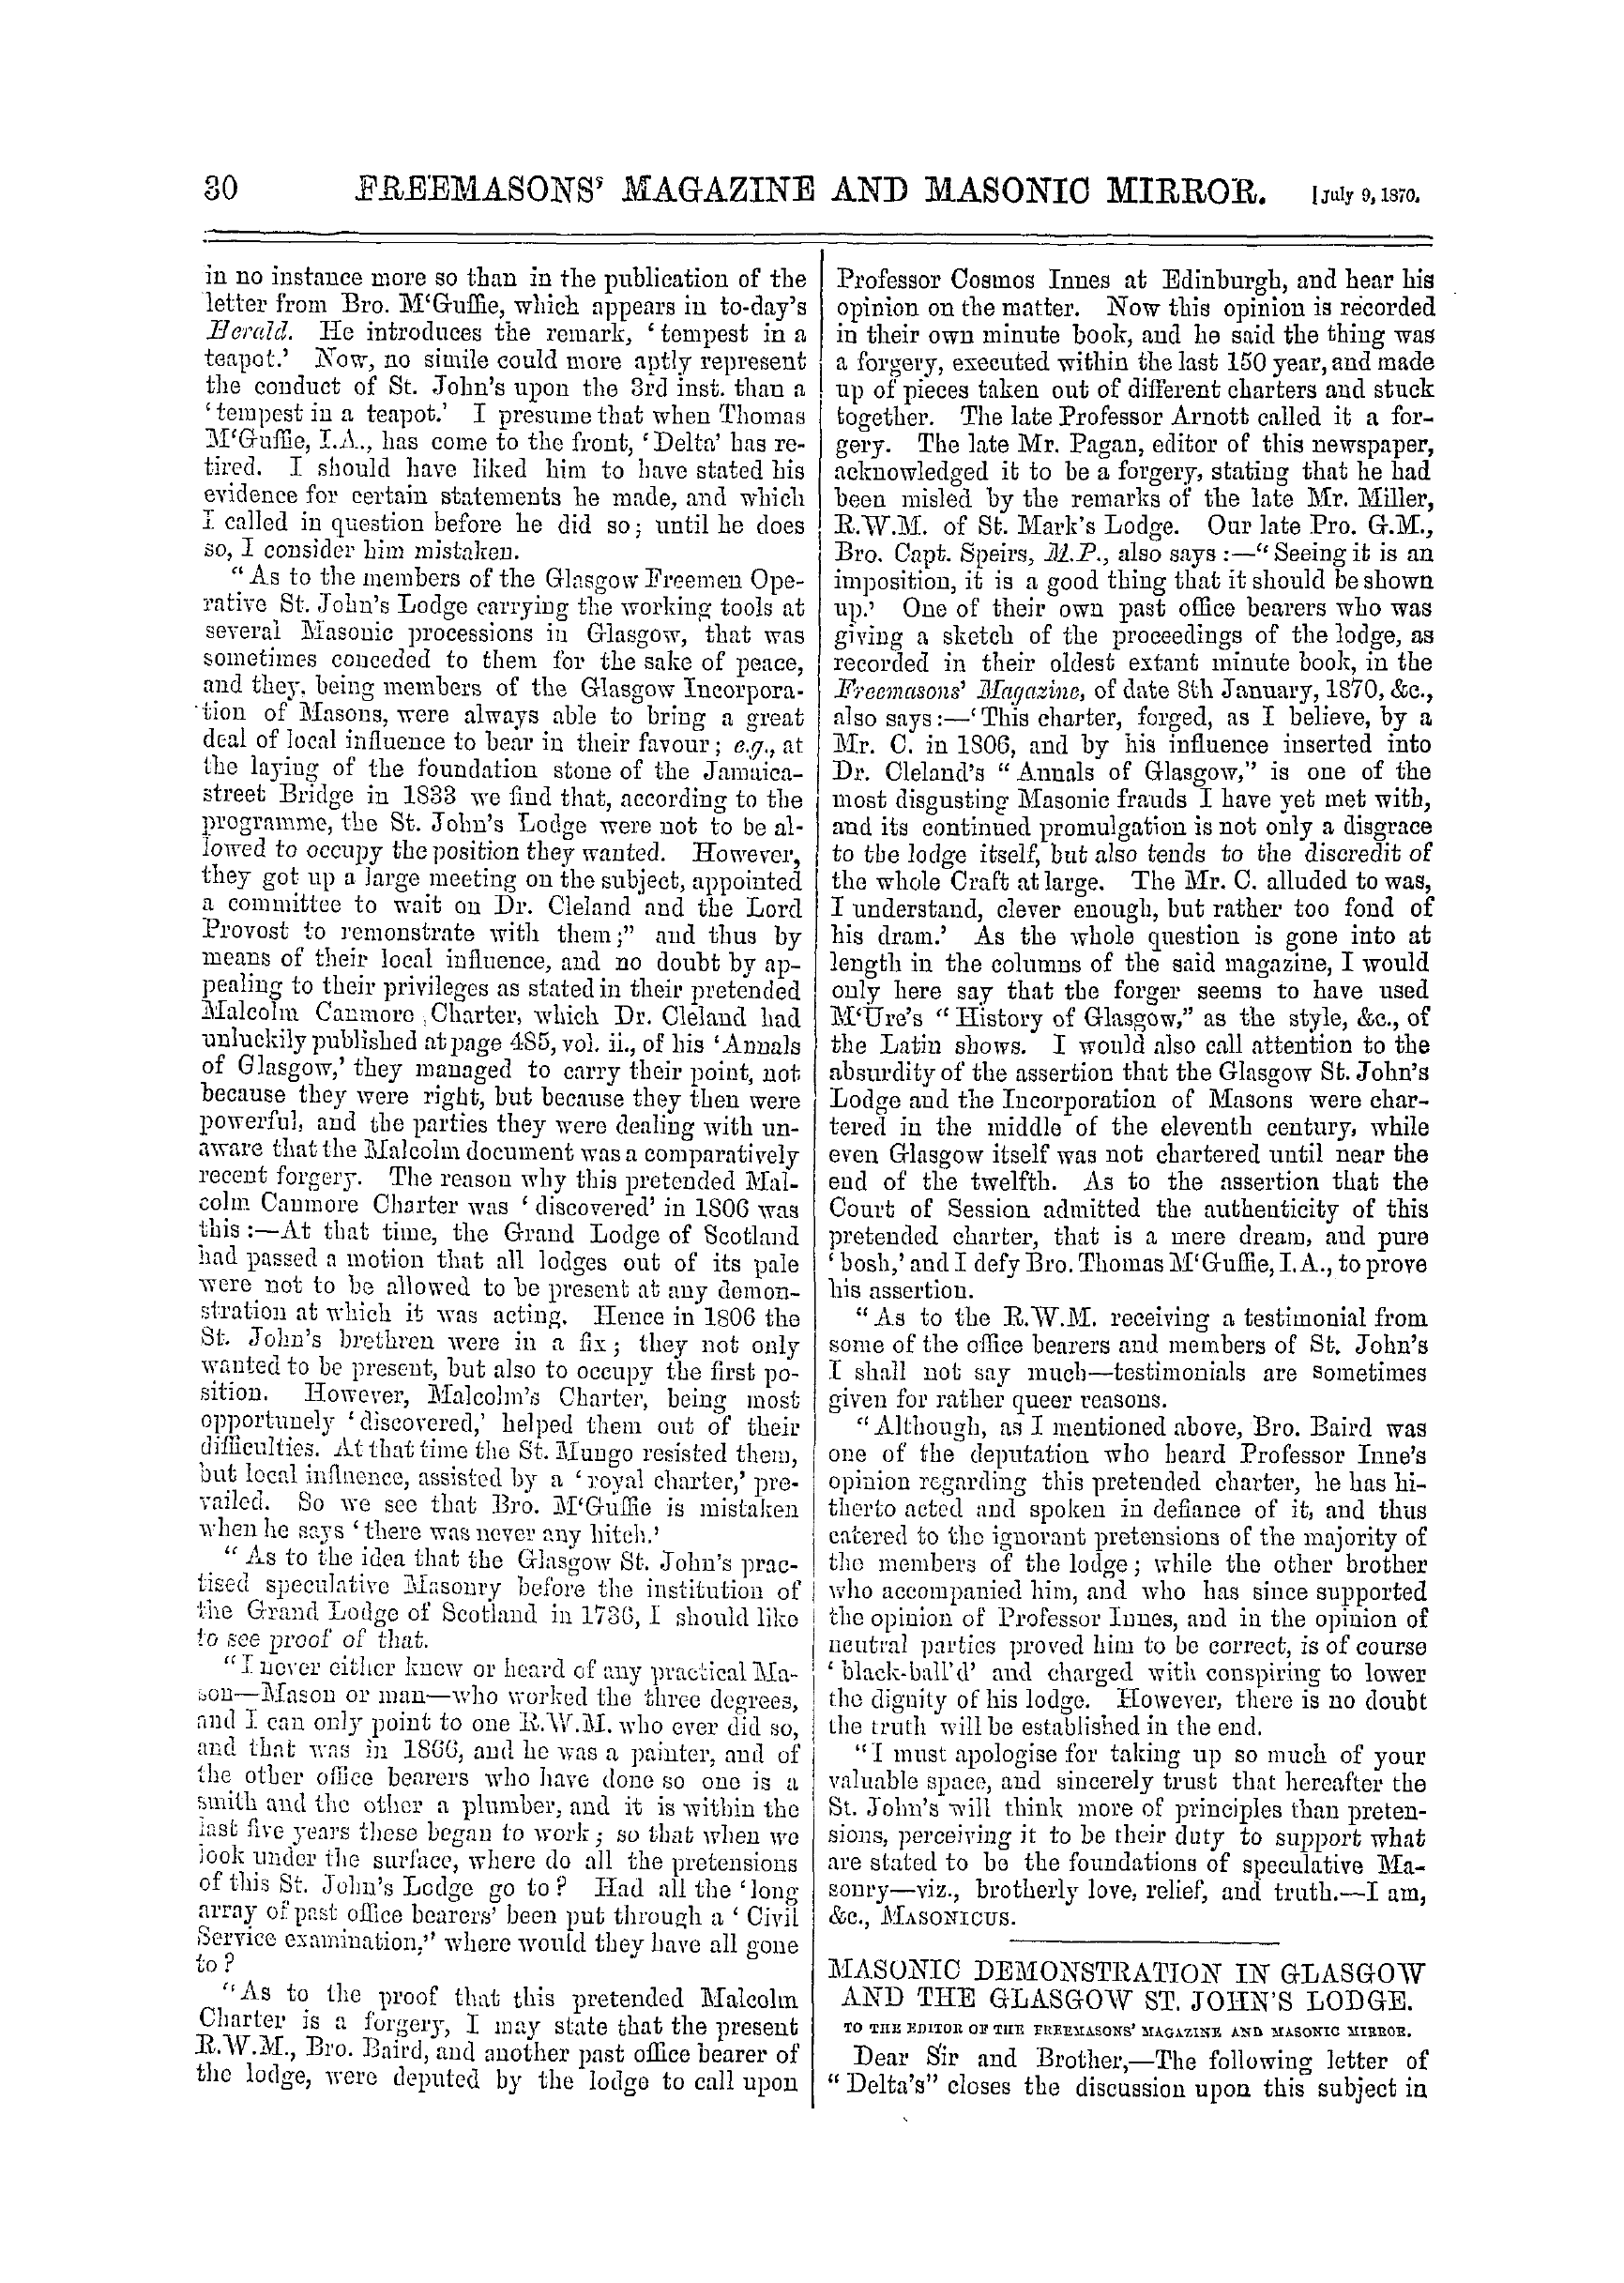 The Freemasons' Monthly Magazine: 1870-07-09: 10